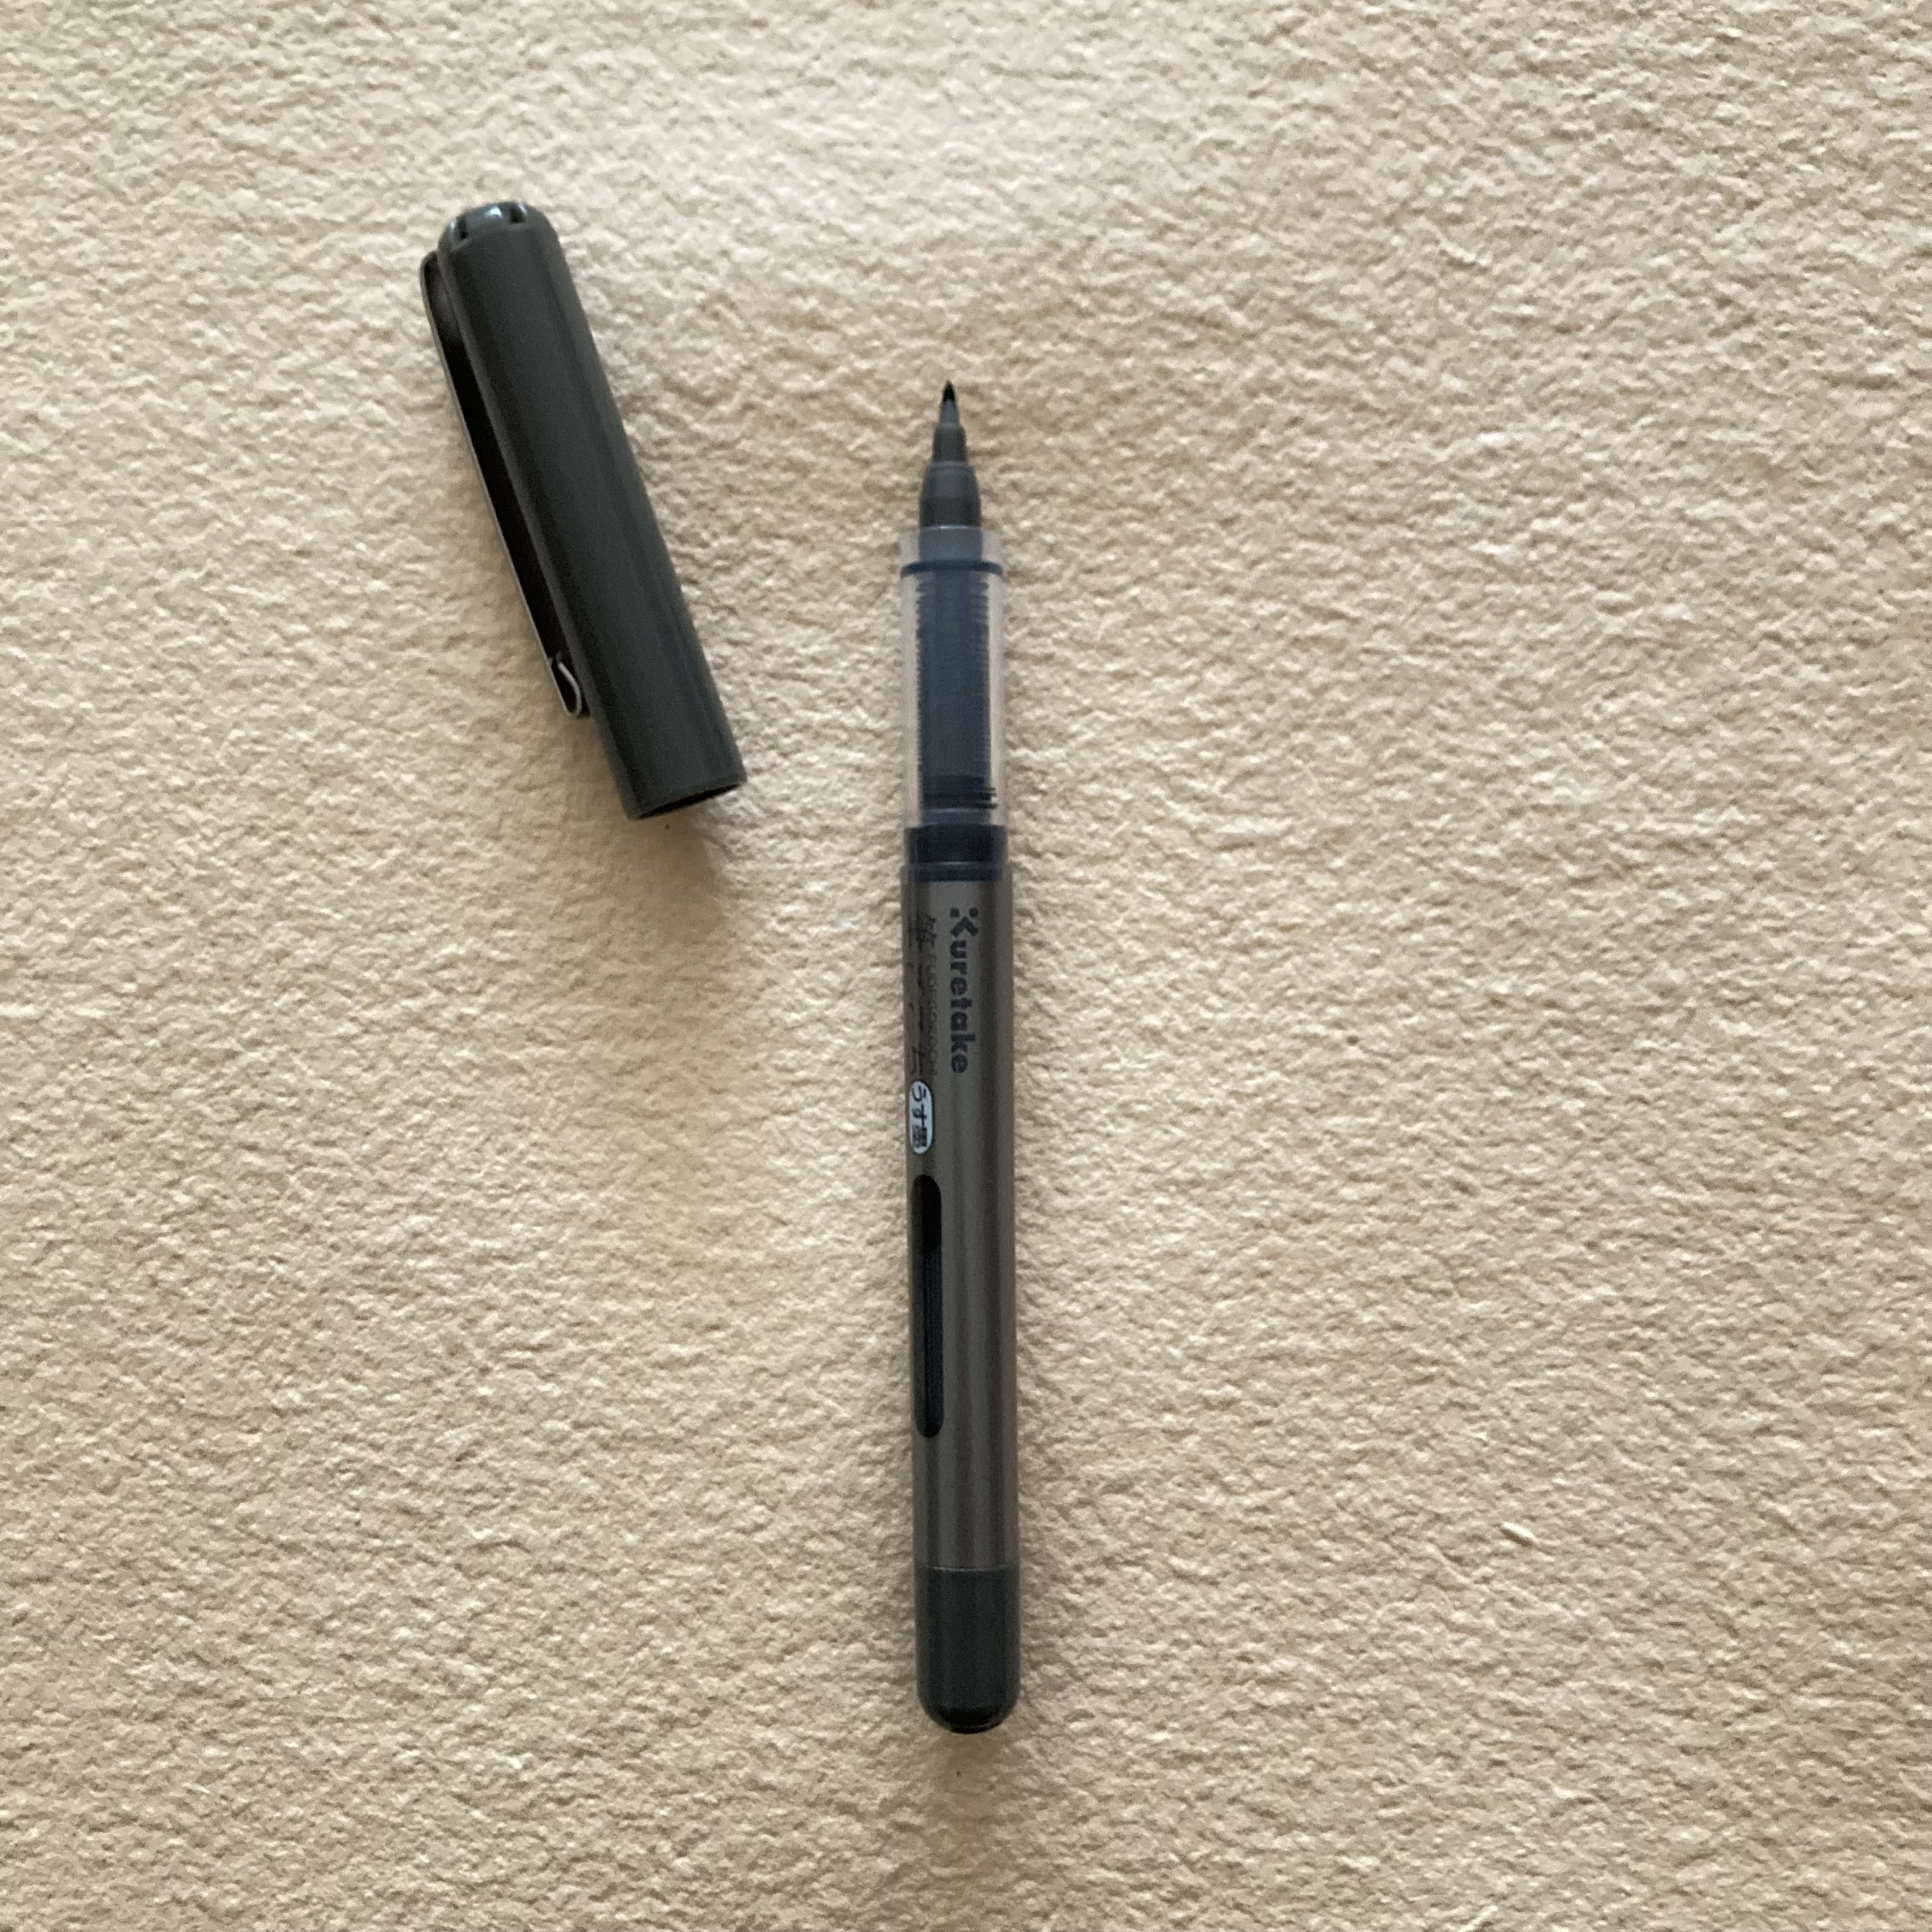 Kuretake Fudegokochi brush pen — Bari Zaki Studio